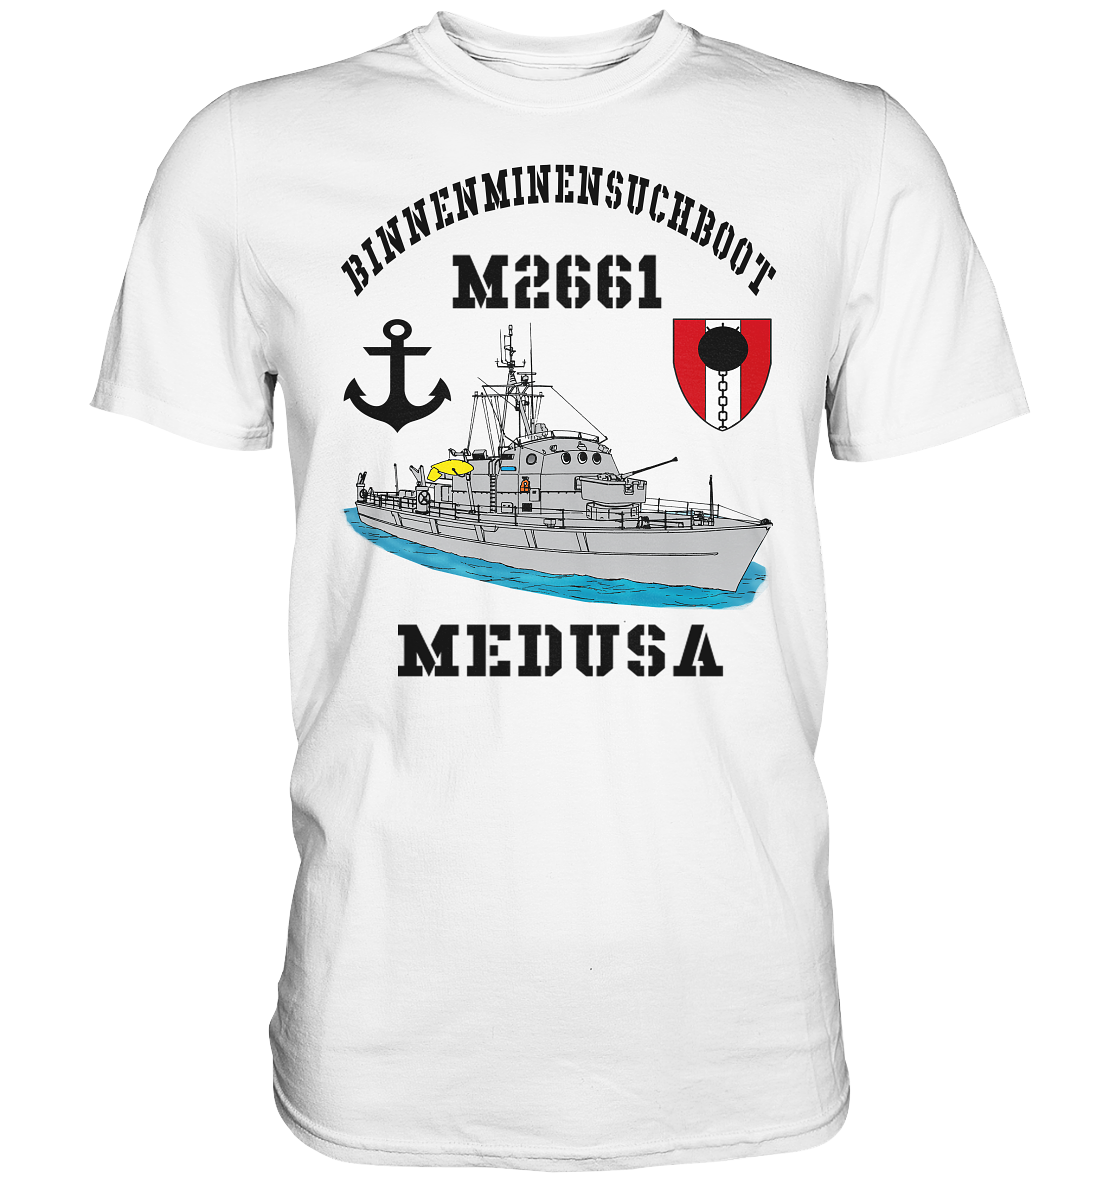 BiMi M2661 MEDUSA 7.MSG Anker  - Premium Shirt